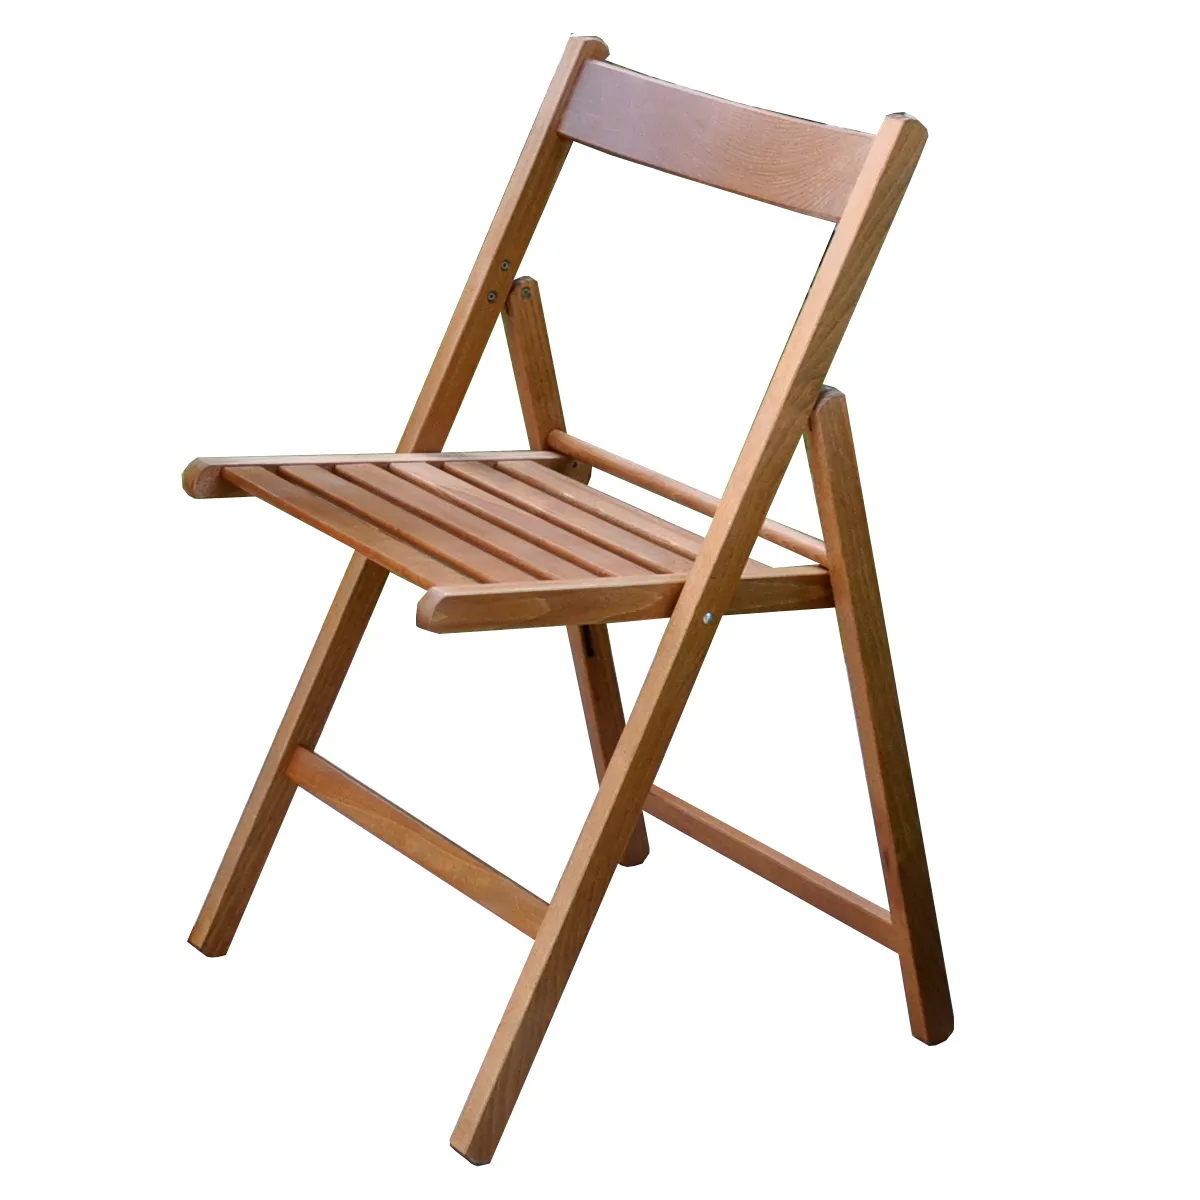 เก้าอี้พับคุณภาพสูงผลิตในอิตาลีไม้บีชพร้อมไหล่โค้งสี Happy Hour วอลนัทสำหรับสวนและลานบ้าน